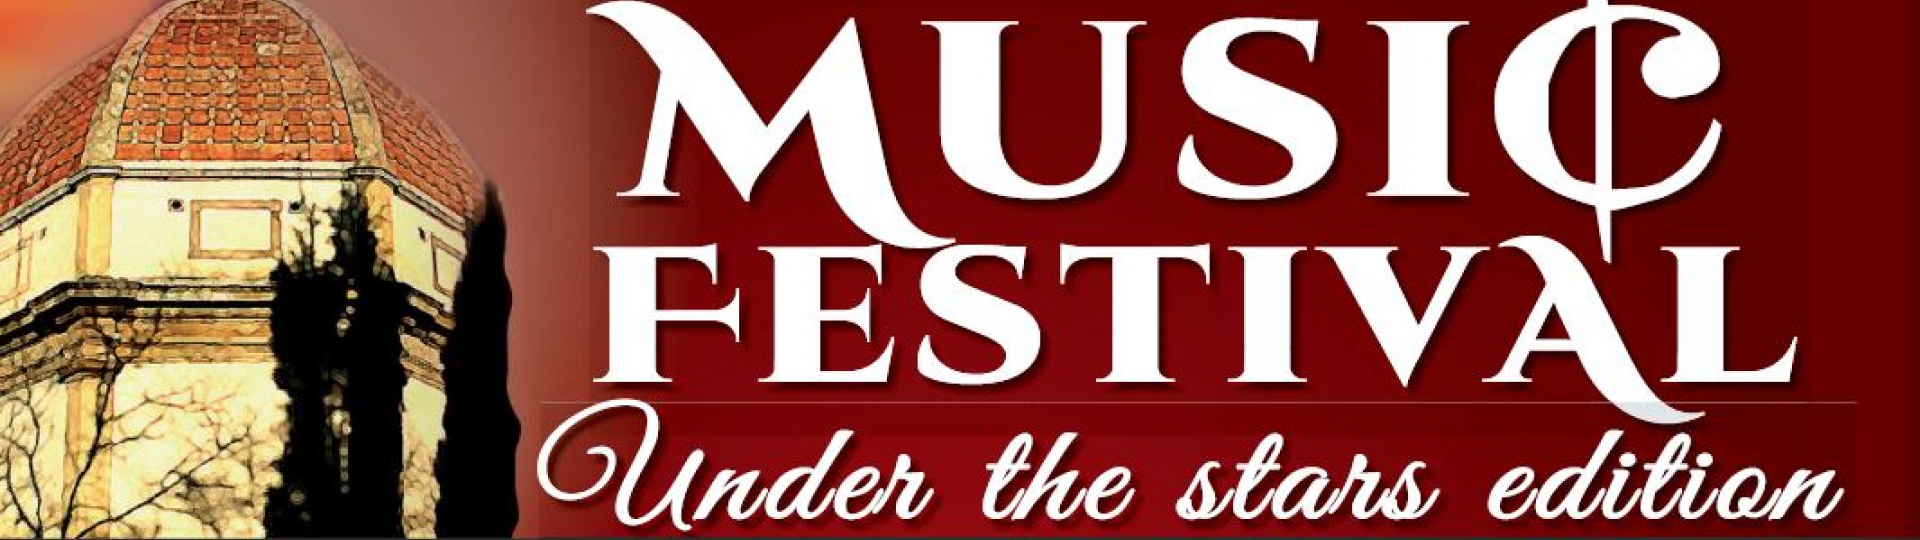 Semifonte music festival_banner